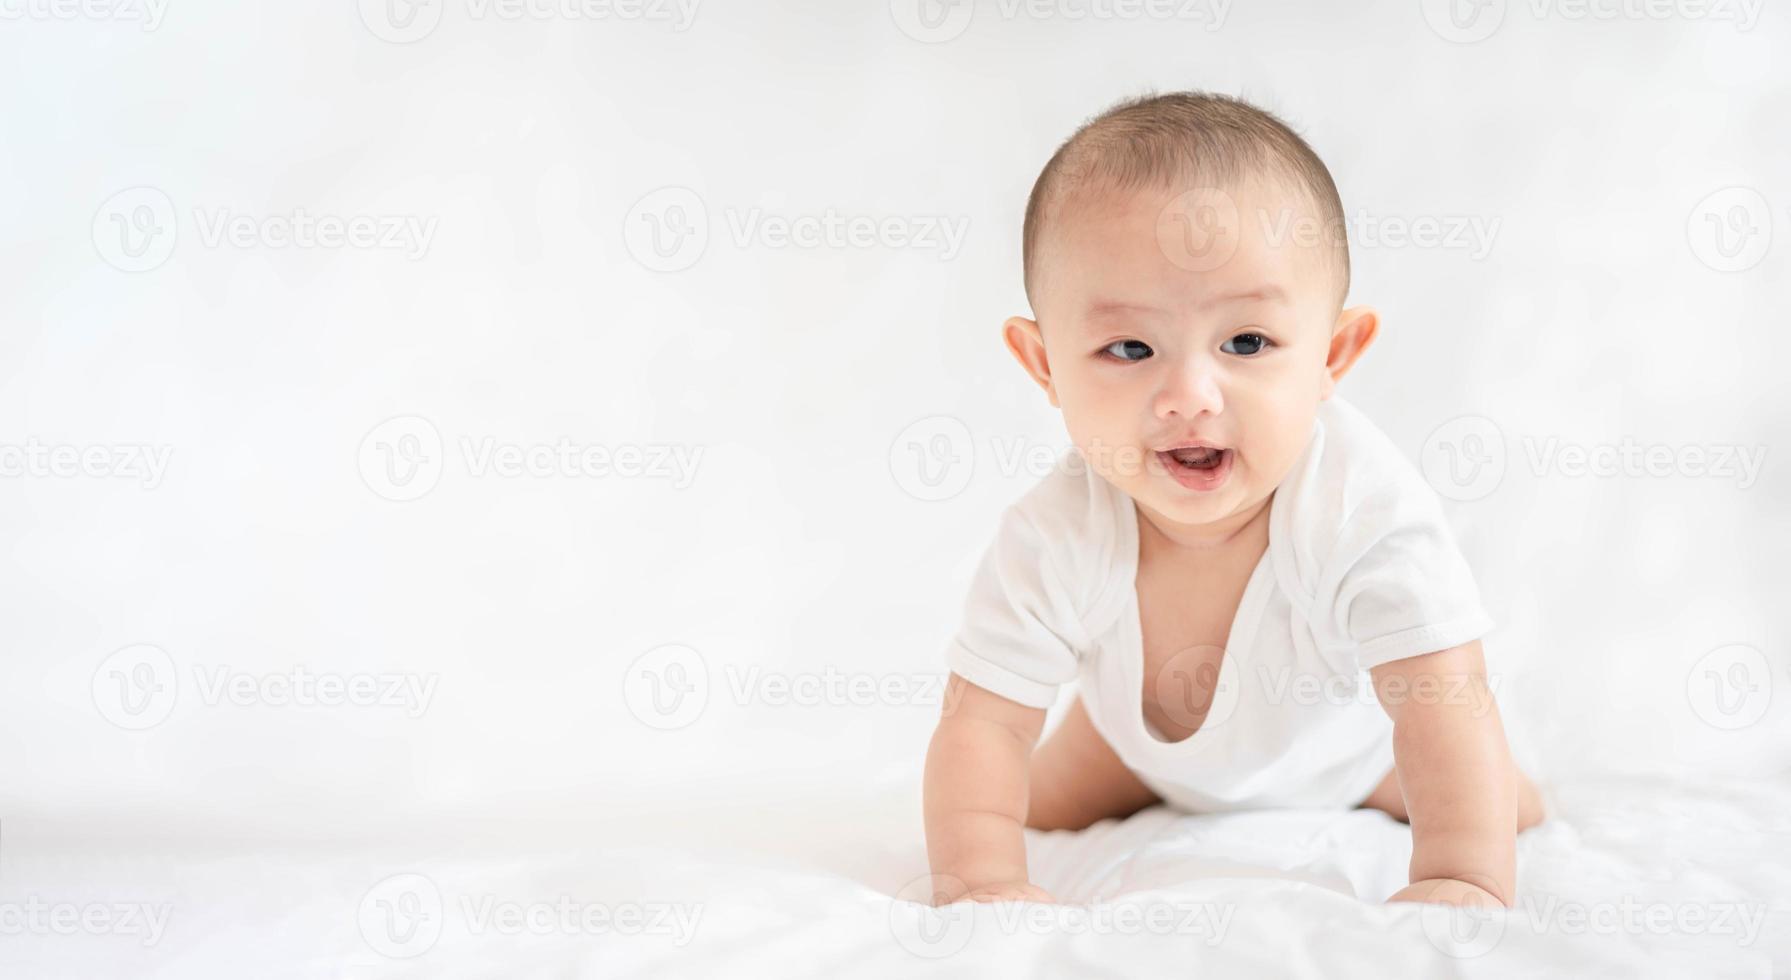 glückliche familie, süßes asiatisches neugeborenes baby, das auf einem weißen bett liegt, blick in die kamera mit einem lachenden lächeln, einem glücklichen gesicht. kleines unschuldiges neugeborenes entzückendes kind am ersten lebenstag. Muttertagskonzept. foto